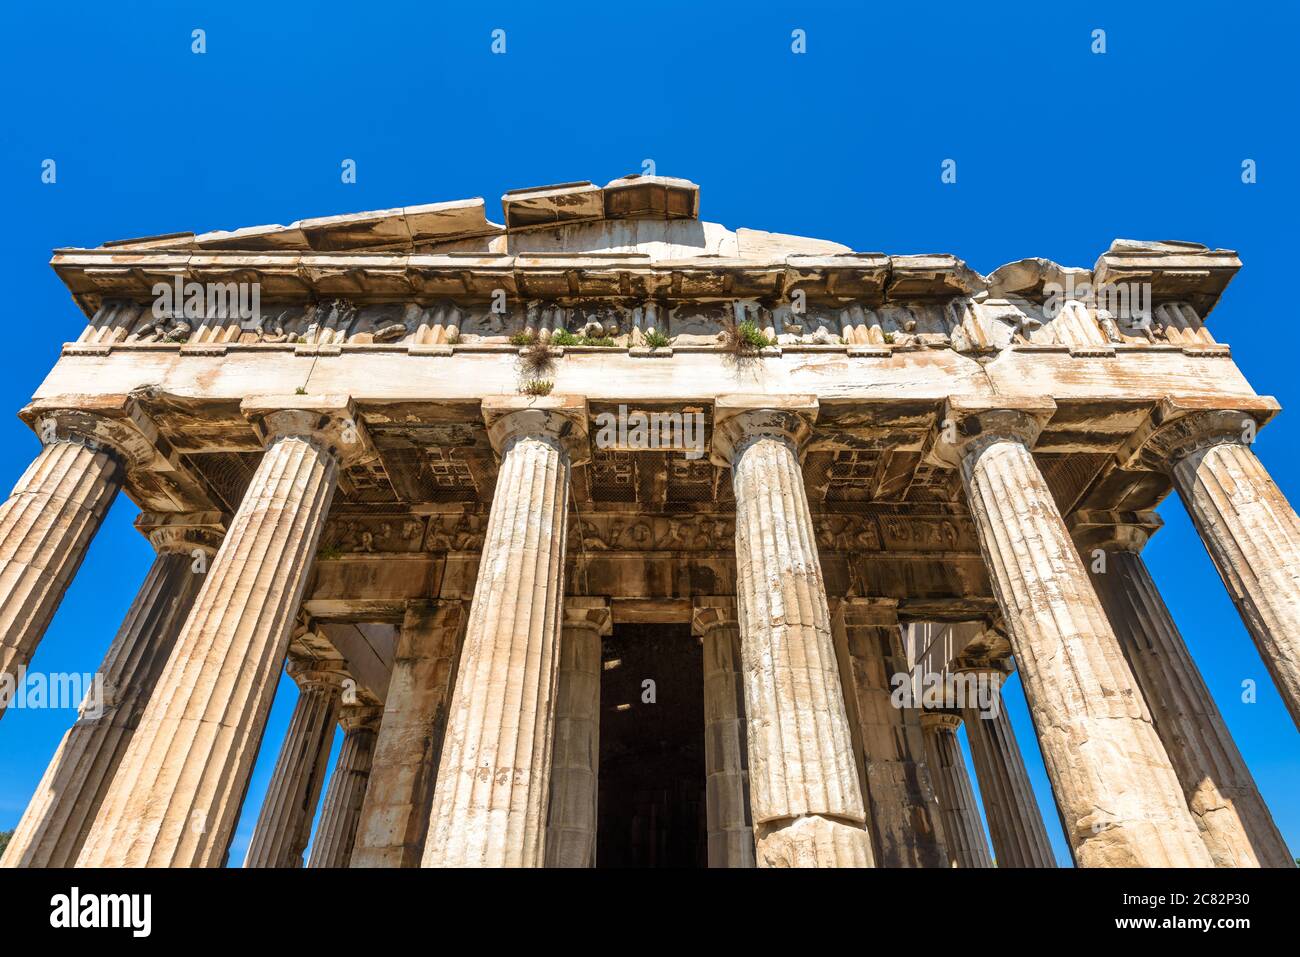 Tempel des Hephaestus im antiken Agora, Athen, Griechenland. Es ist berühmte Wahrzeichen von Athen. Vorderansicht des klassischen griechischen Tempels auf Himmelshintergrund, monum Stockfoto